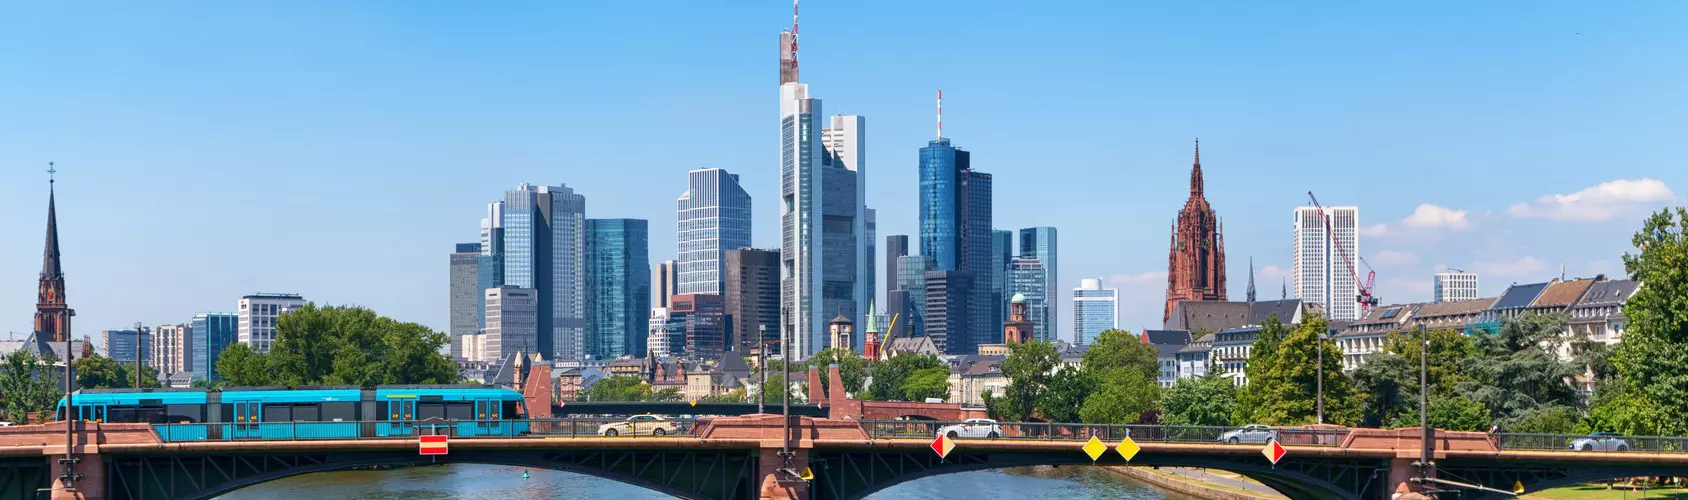 Frankfurt am Main Skyline mit einer Brücke im Vordergrund